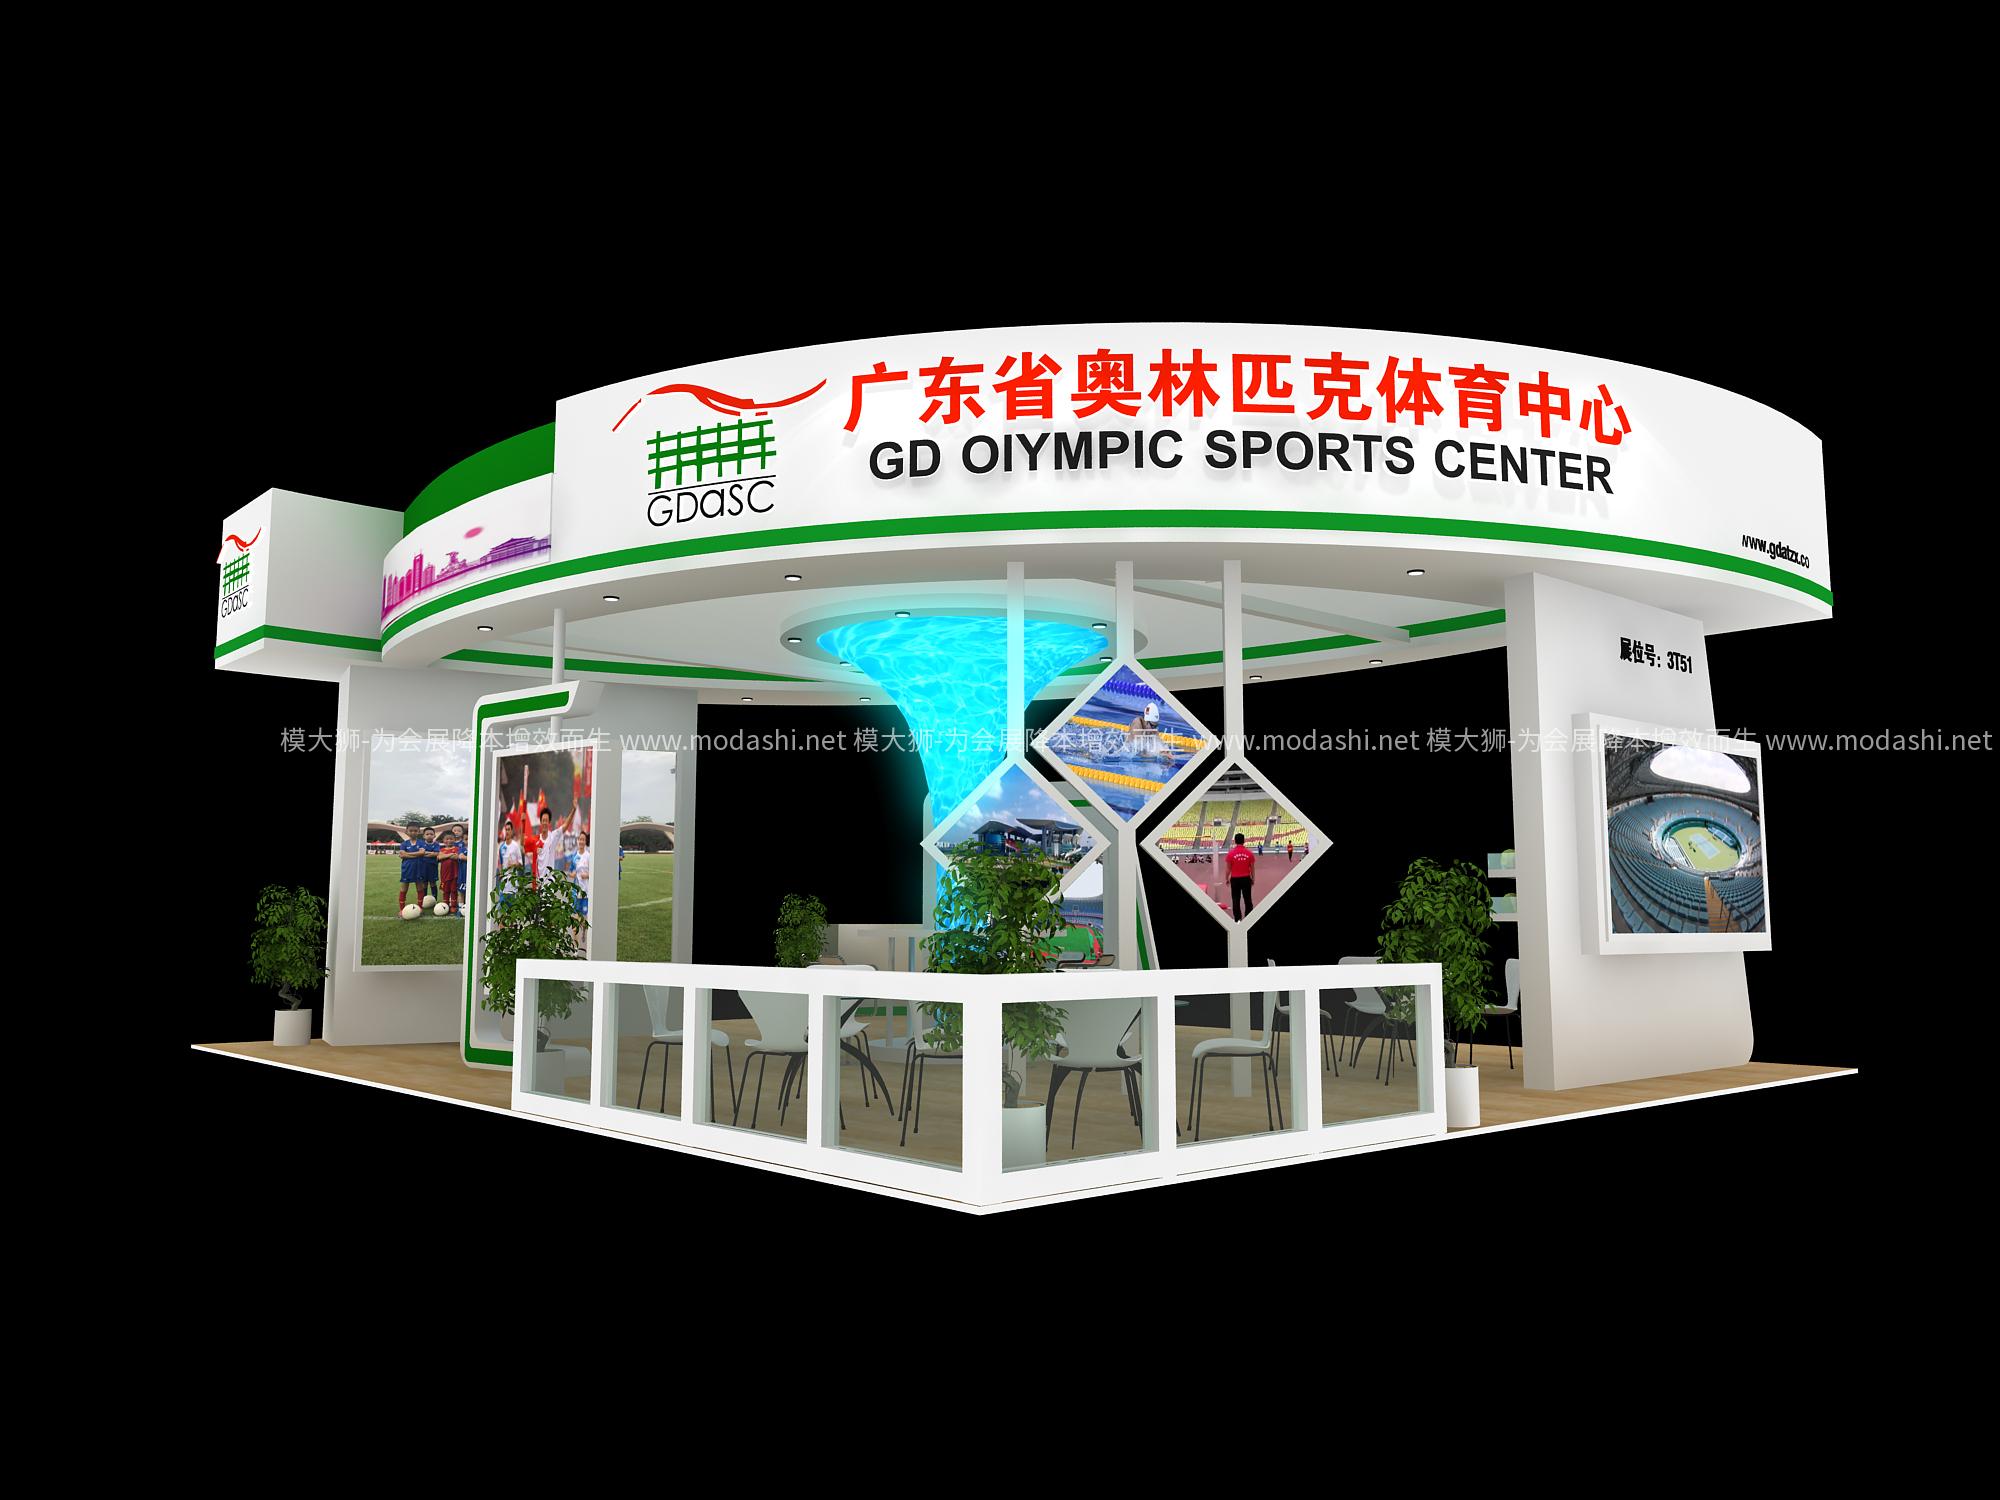 2019年广州奥林匹克中心展位模型